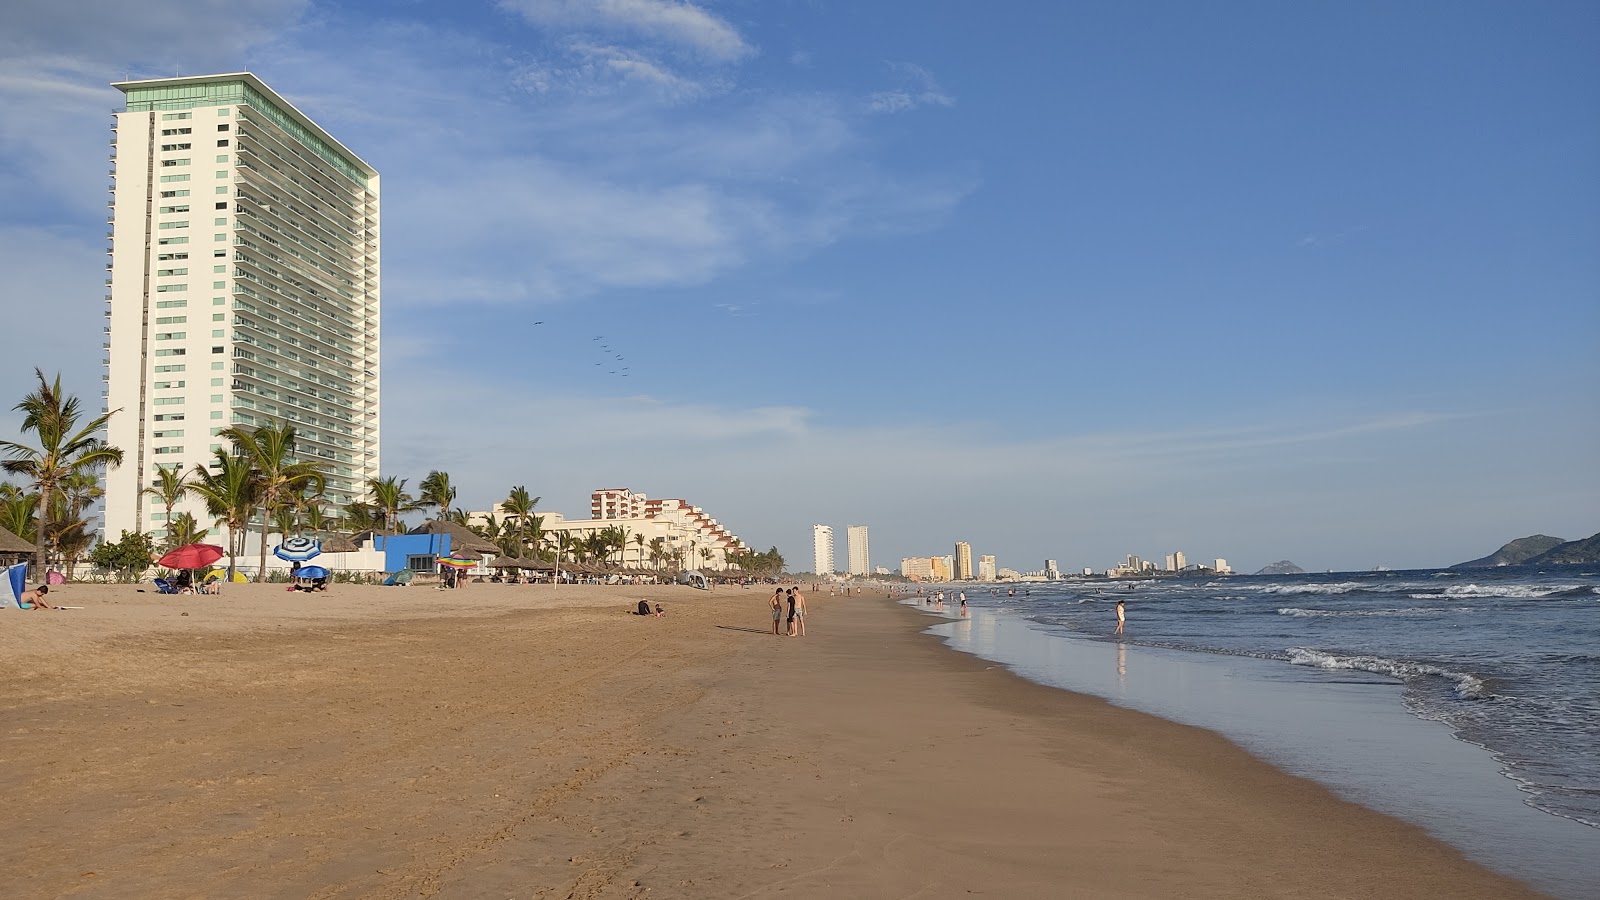 Foto av Mazatlán Stranden med ljus sand yta